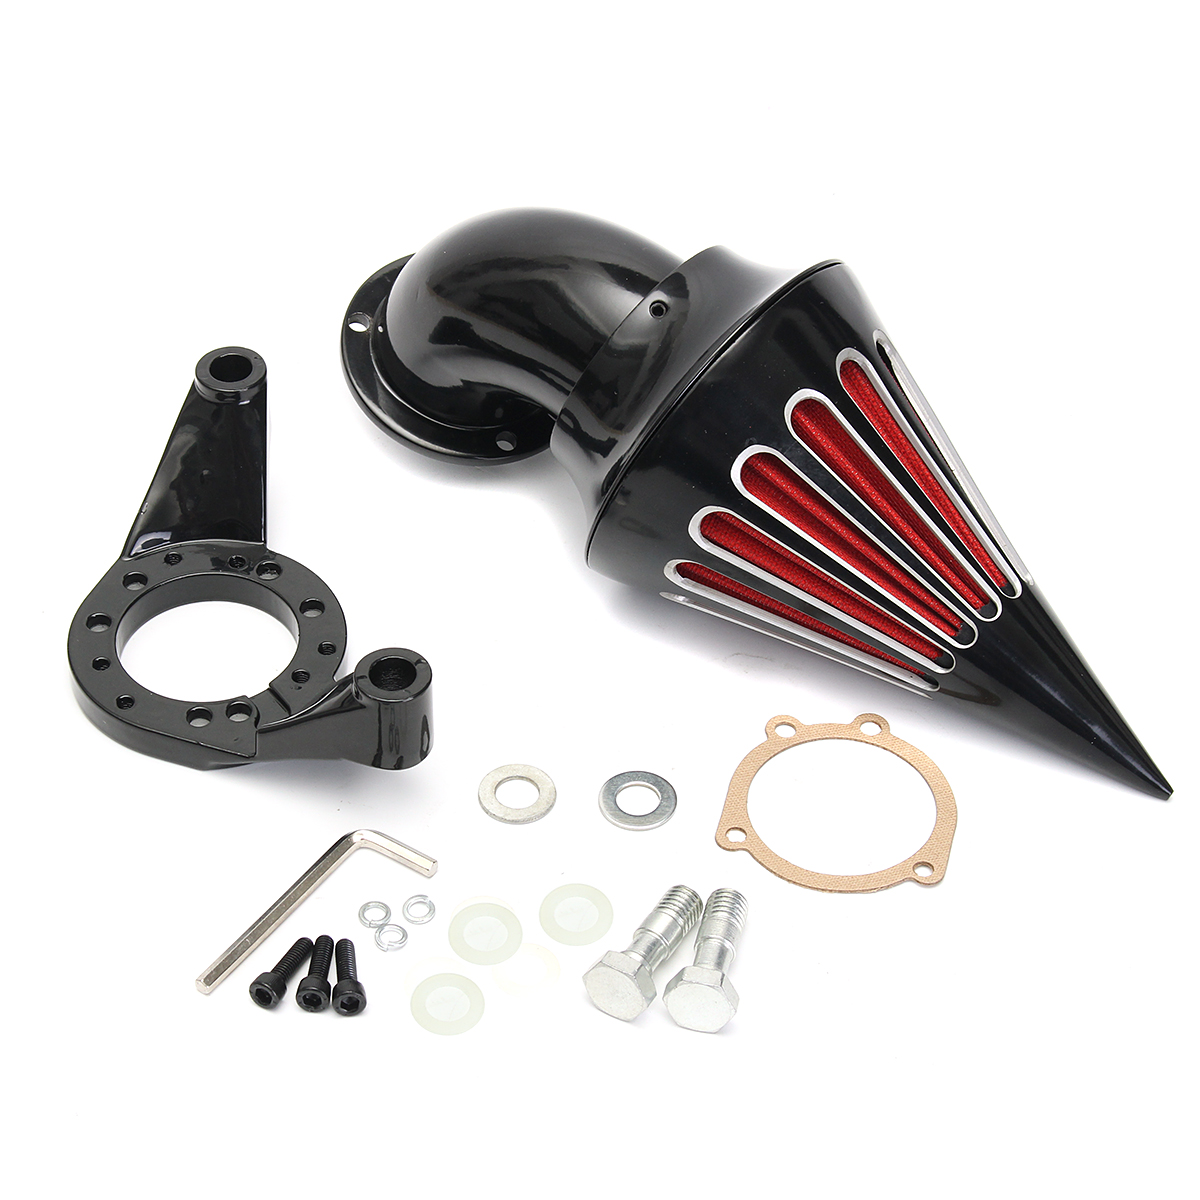 

Motorcycle Spike Air Cleaner Kit Intake Filter For Harley CV Carburetor V-Twin